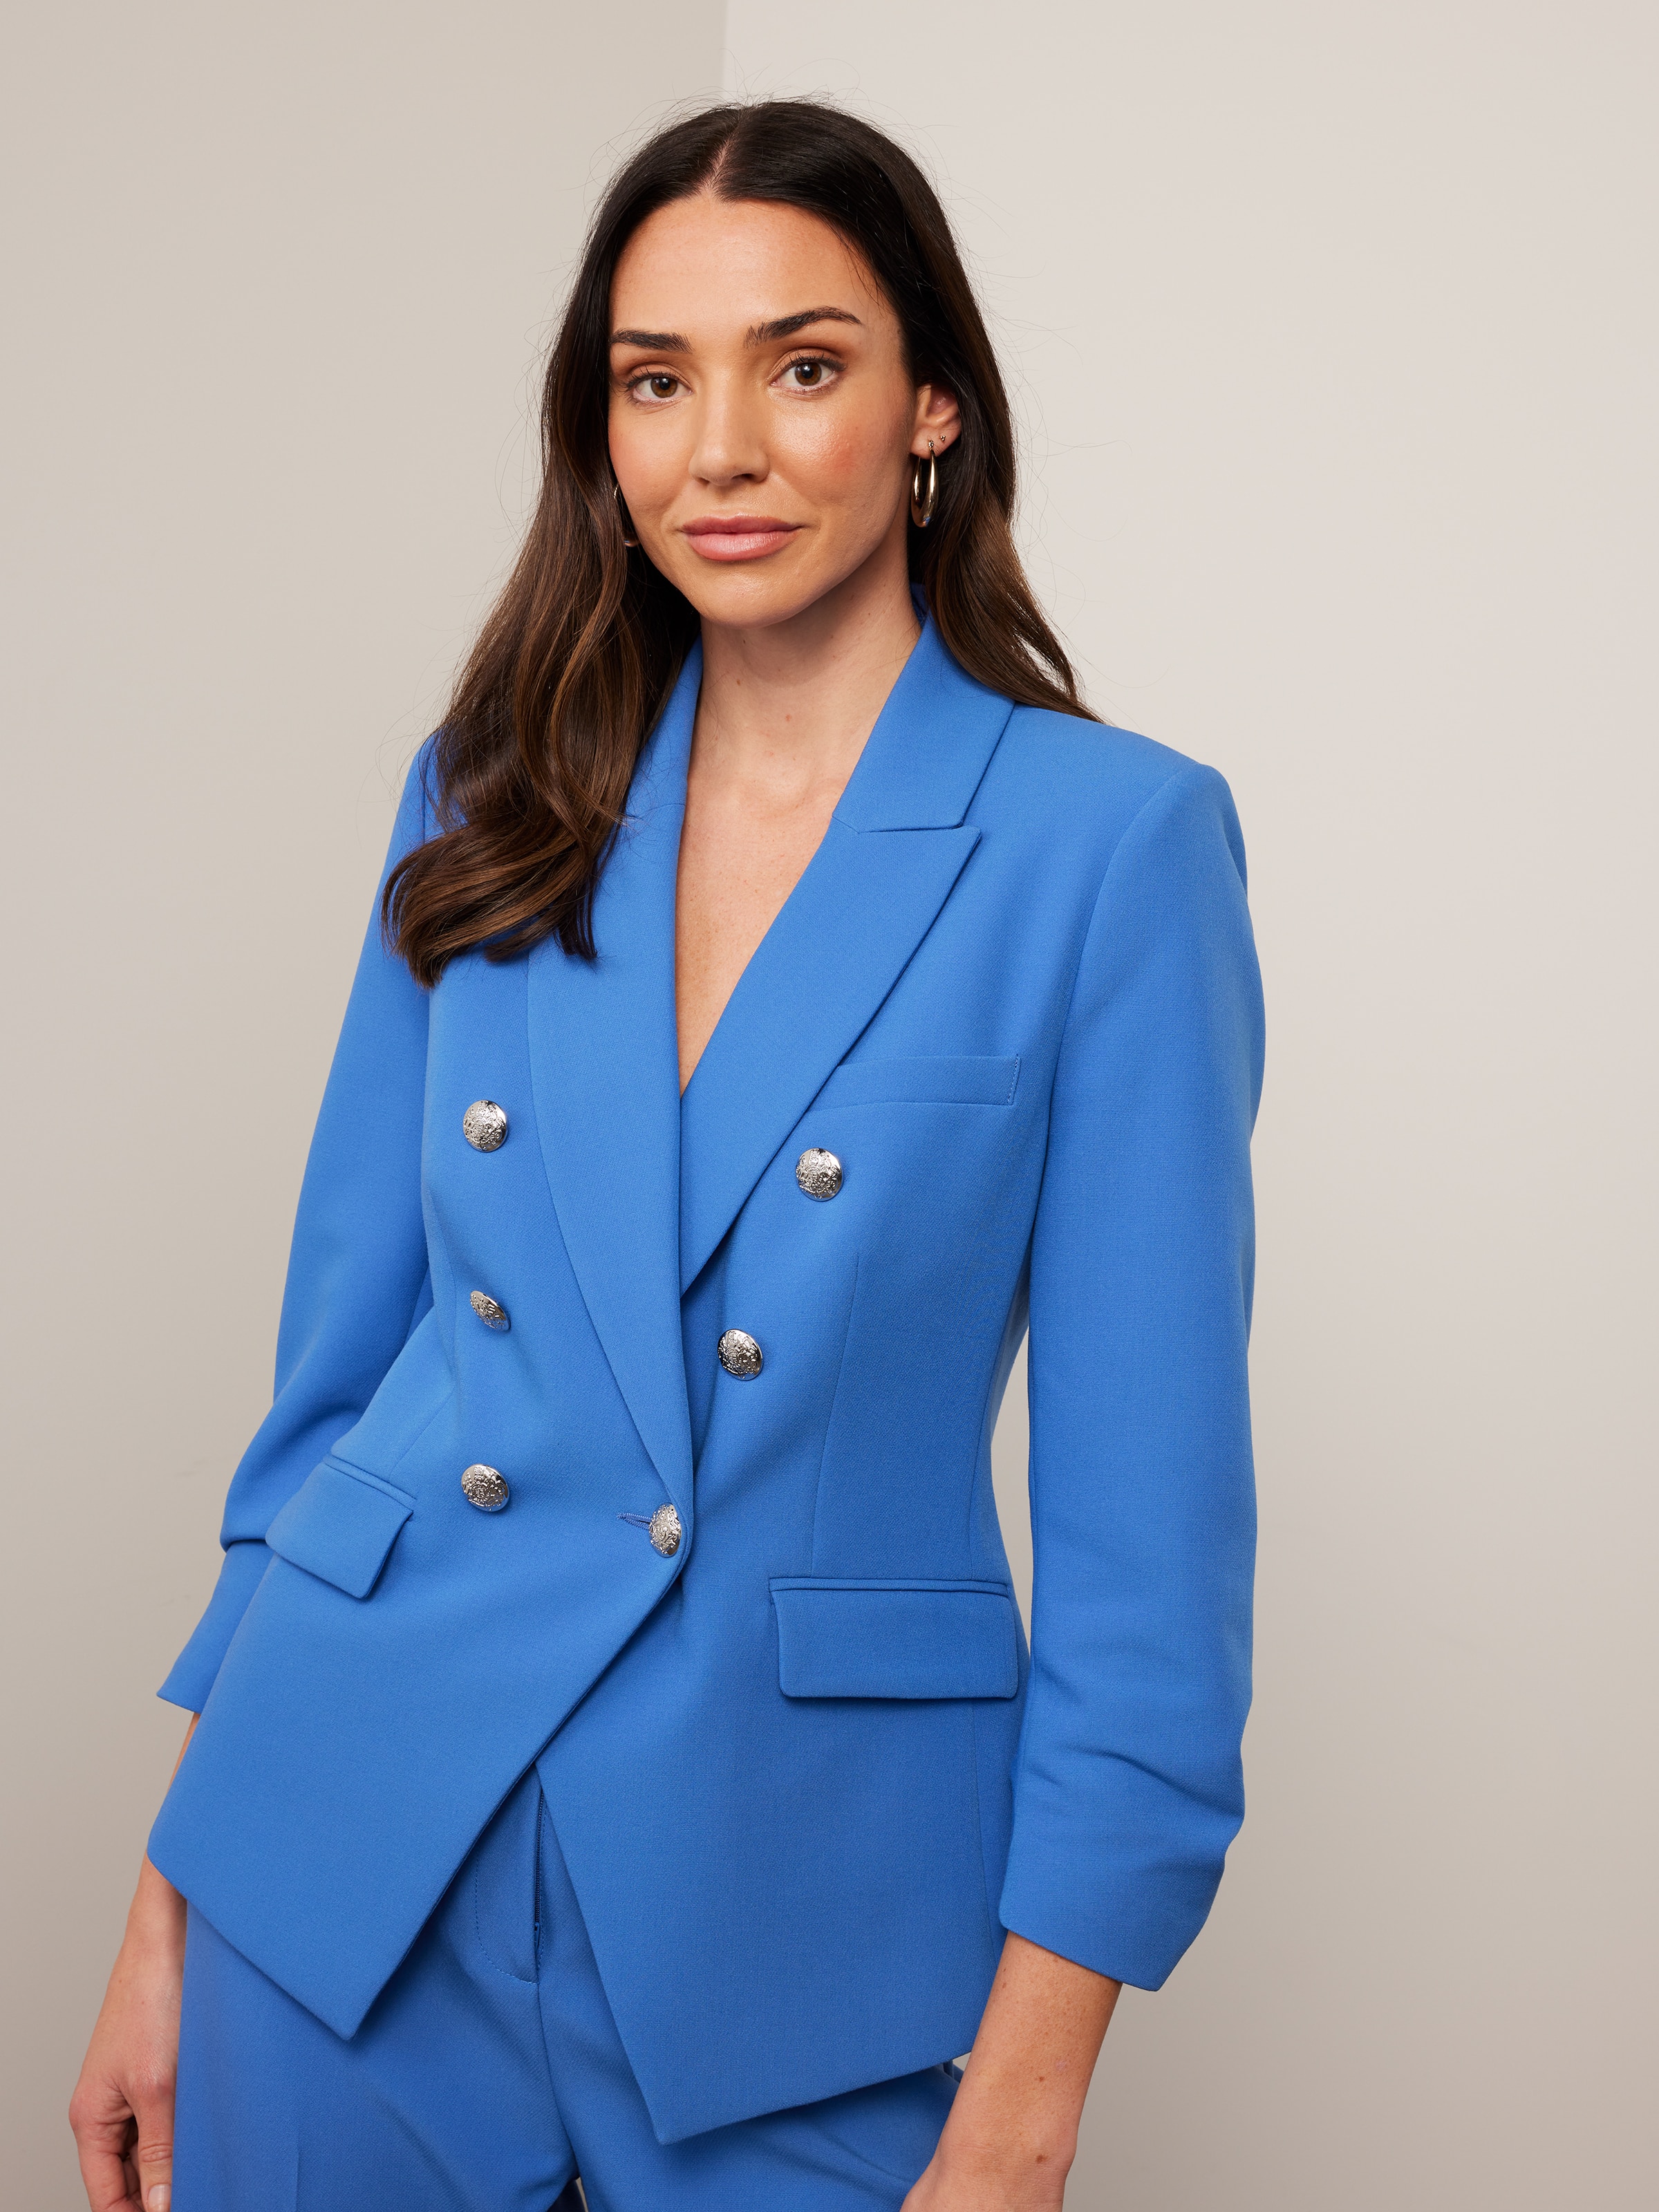 LBECLEY Suits for Women Womens Two Piece Lapels Suit Set Office Business  Long Sleeve Formal Jacket Pant Suit Slim Fit Trouser Jacket Suit with Waist  Belt Pant Suit Junior Blue S 